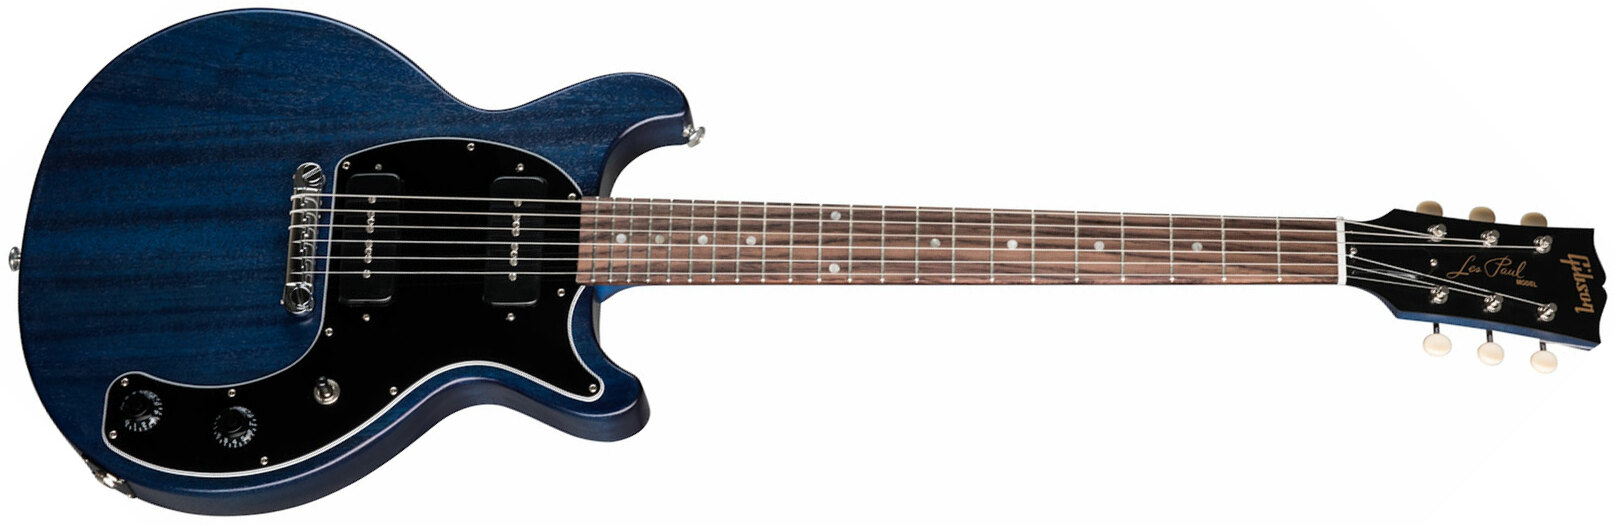 Gibson Les Paul Special Tribute Dc Modern P90 - Blue Stain - Guitarra eléctrica de doble corte - Main picture